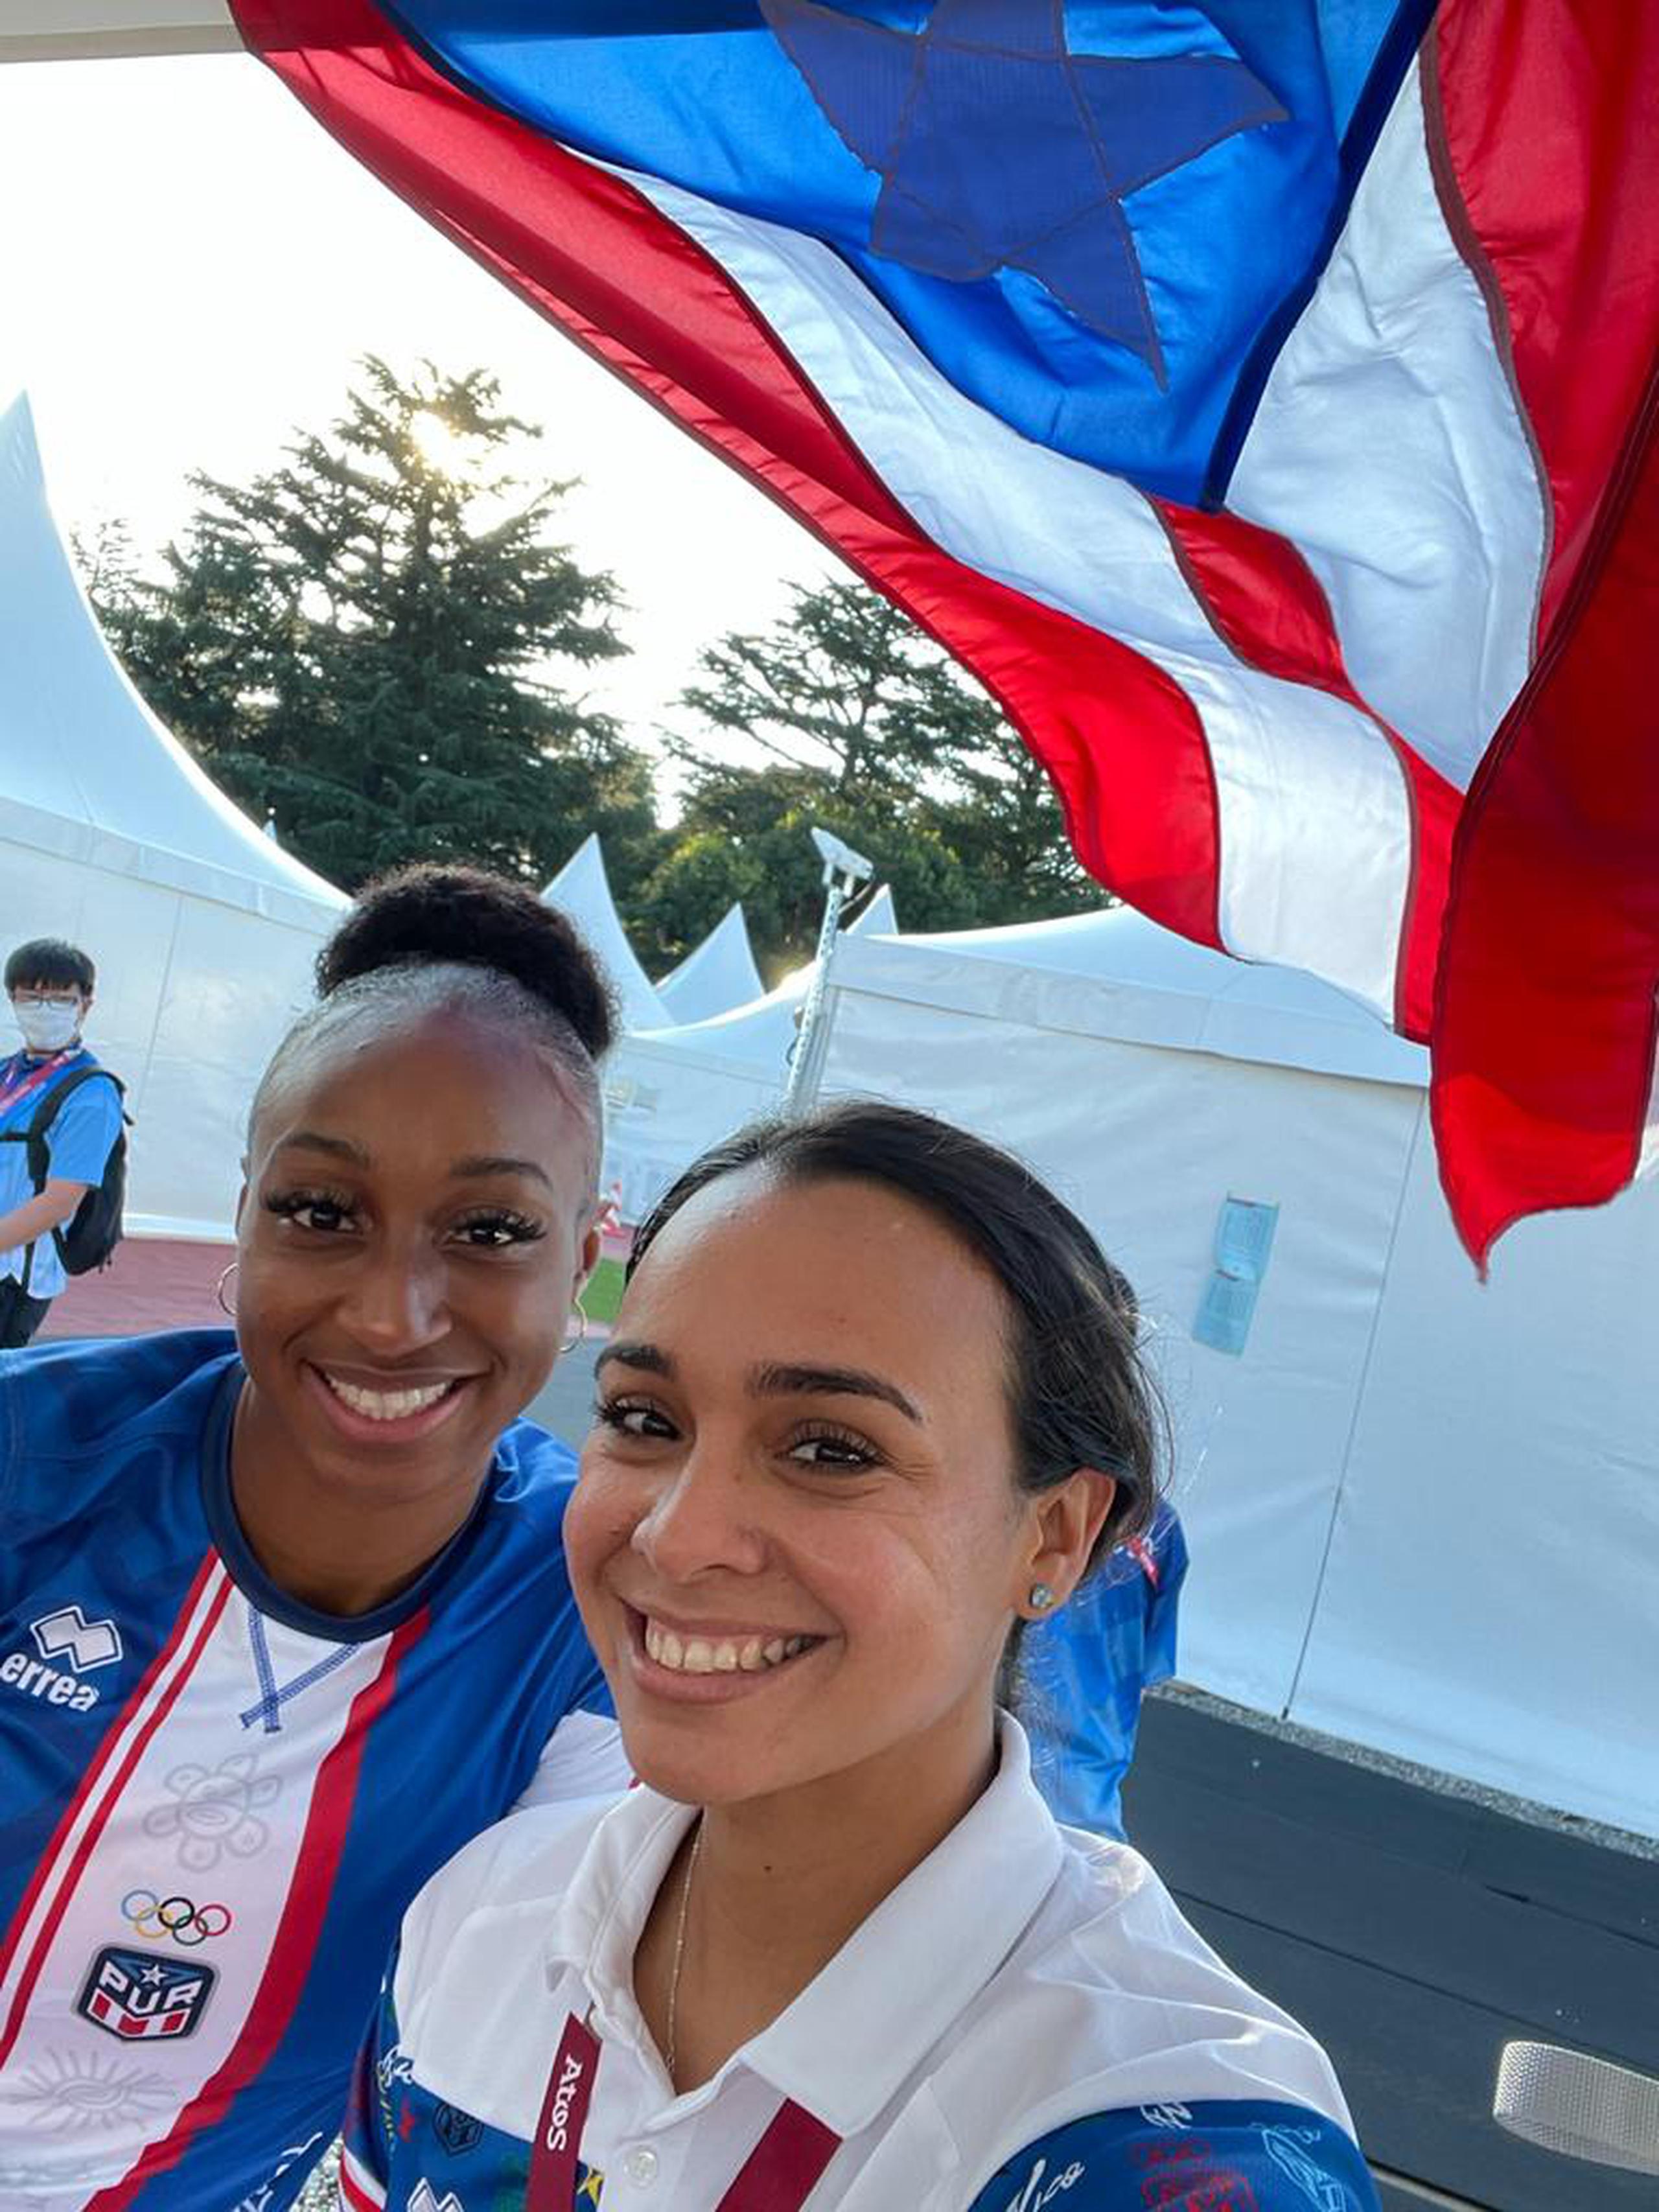 Daylin Chacón Grafals colocó esta bandera de Puerto Rico, a petición de Jasmine Camacho Quinn, en la carpa de terapia de la corredora en el estadio de la competencia. 